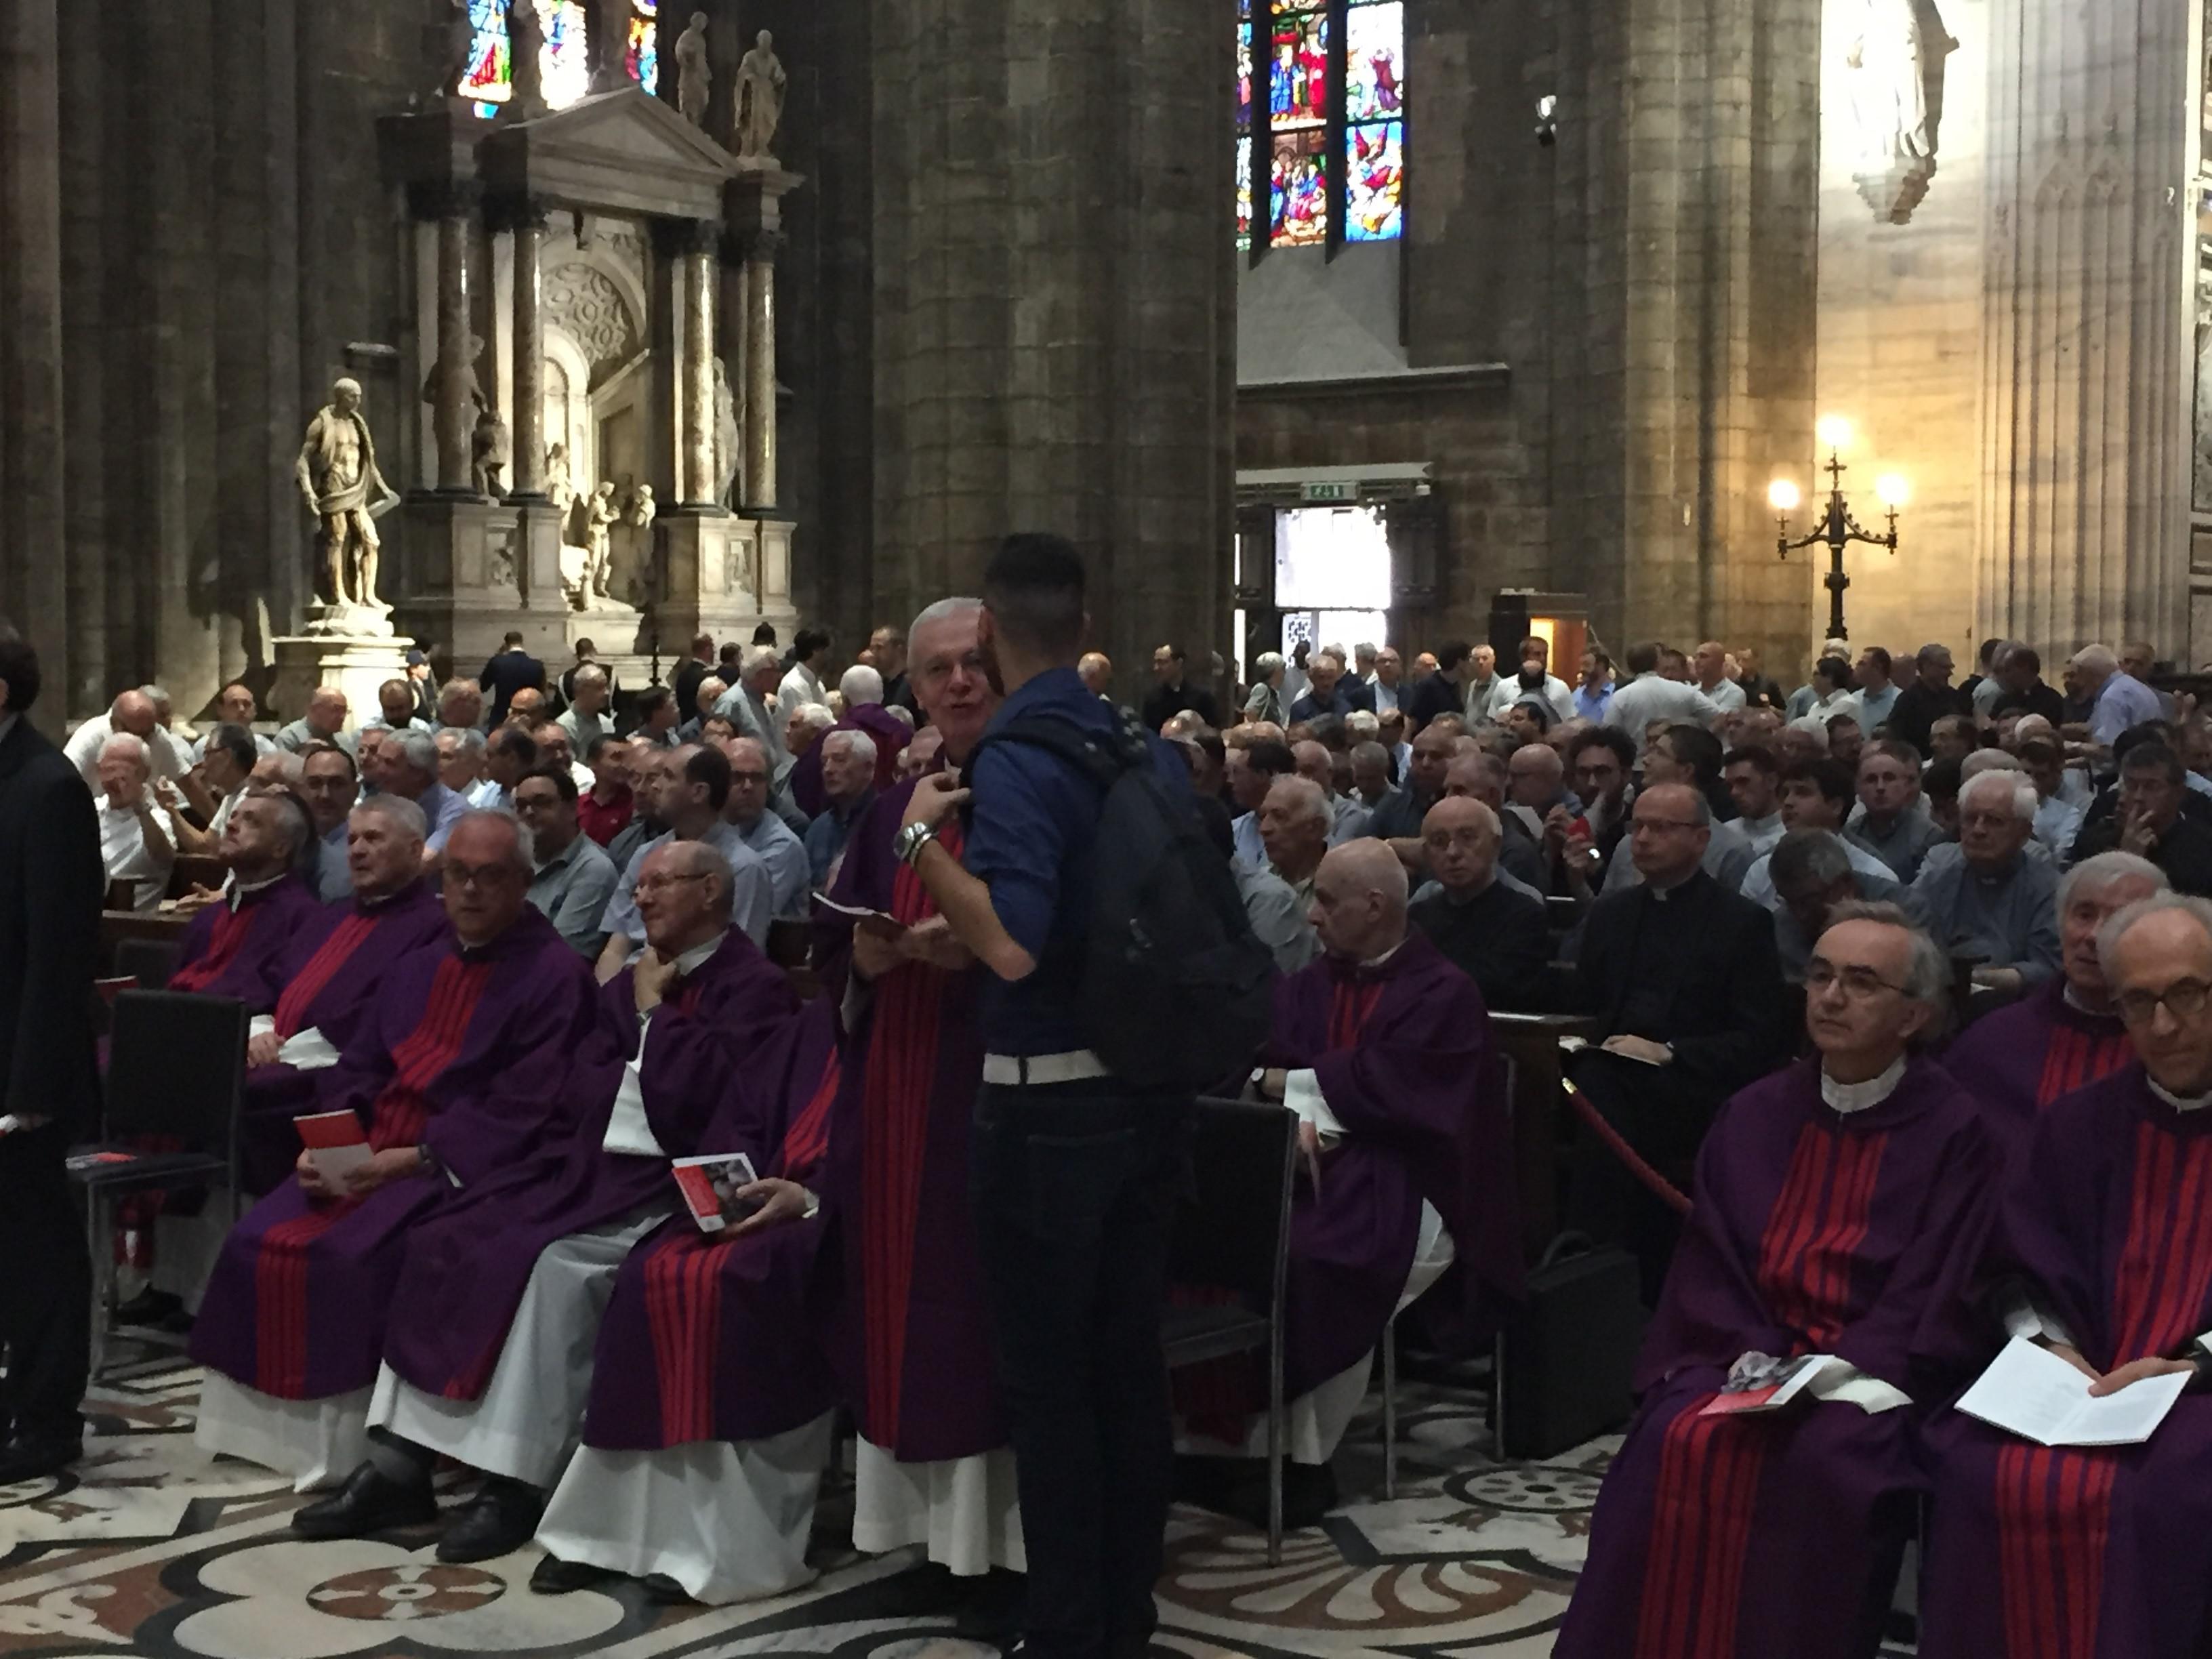 Vescovi, cardinali e preti si preparano a cerimonia funebre